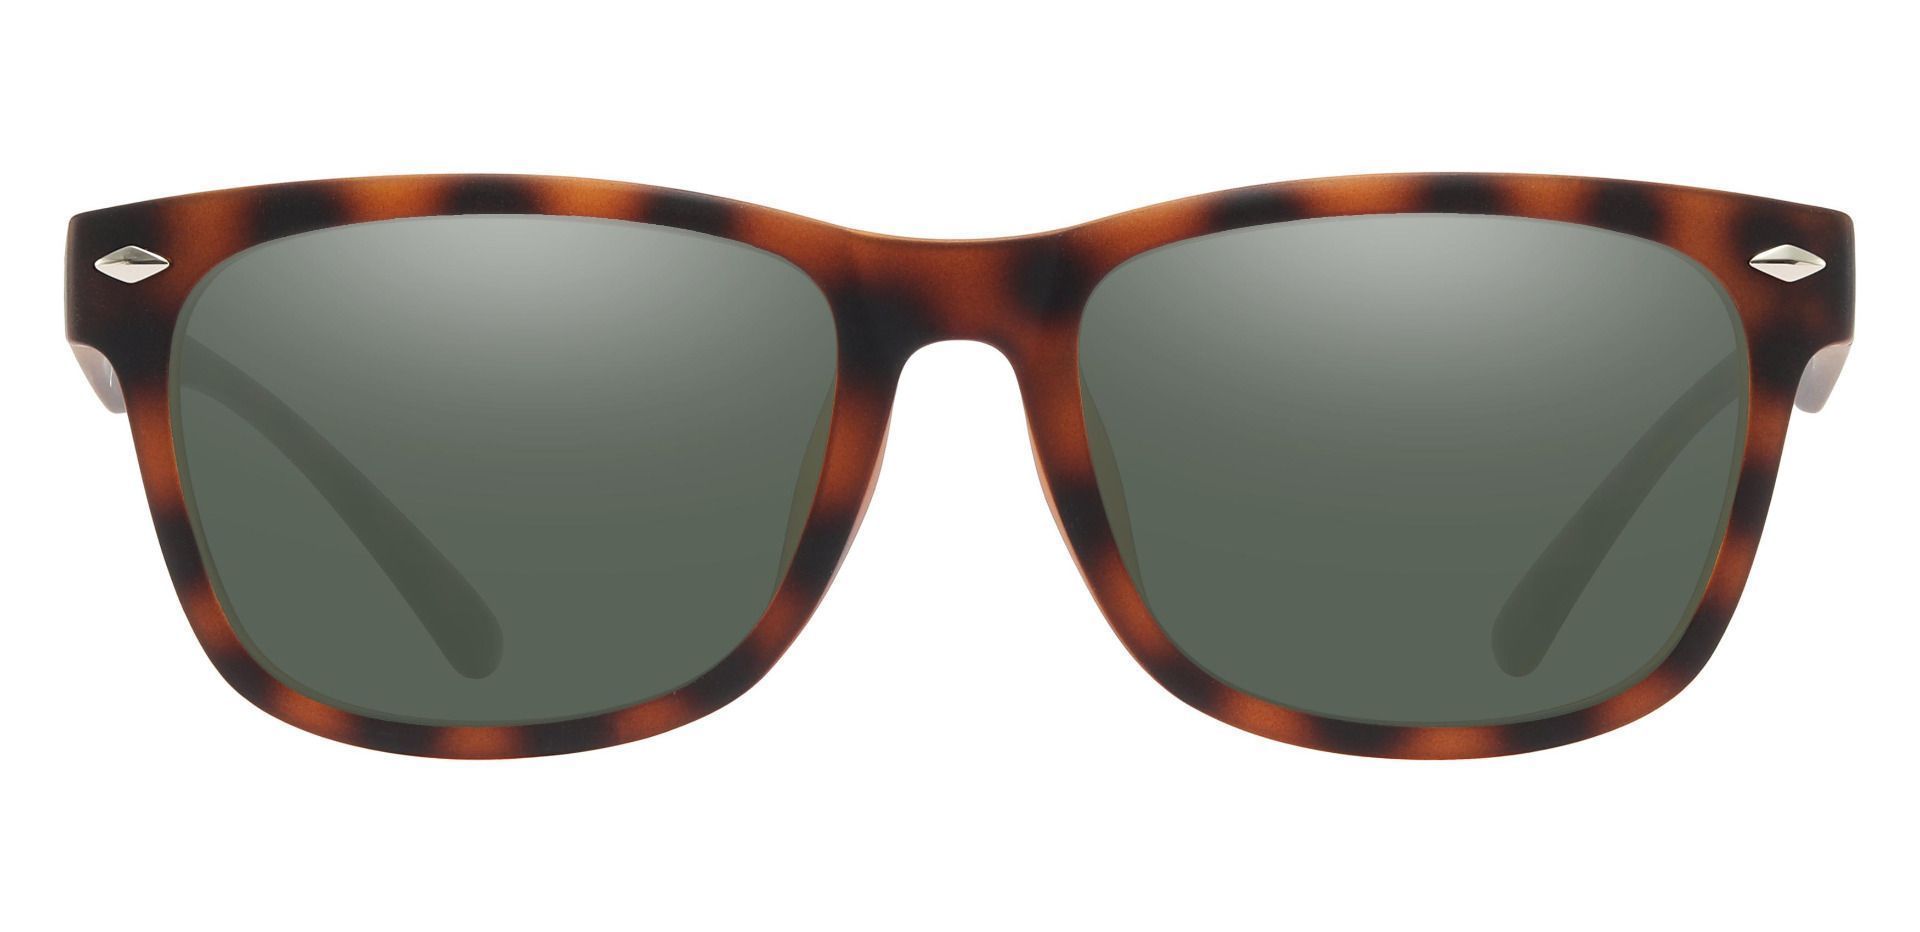 Shaler Square Reading Sunglasses - Tortoise Frame With Green Lenses